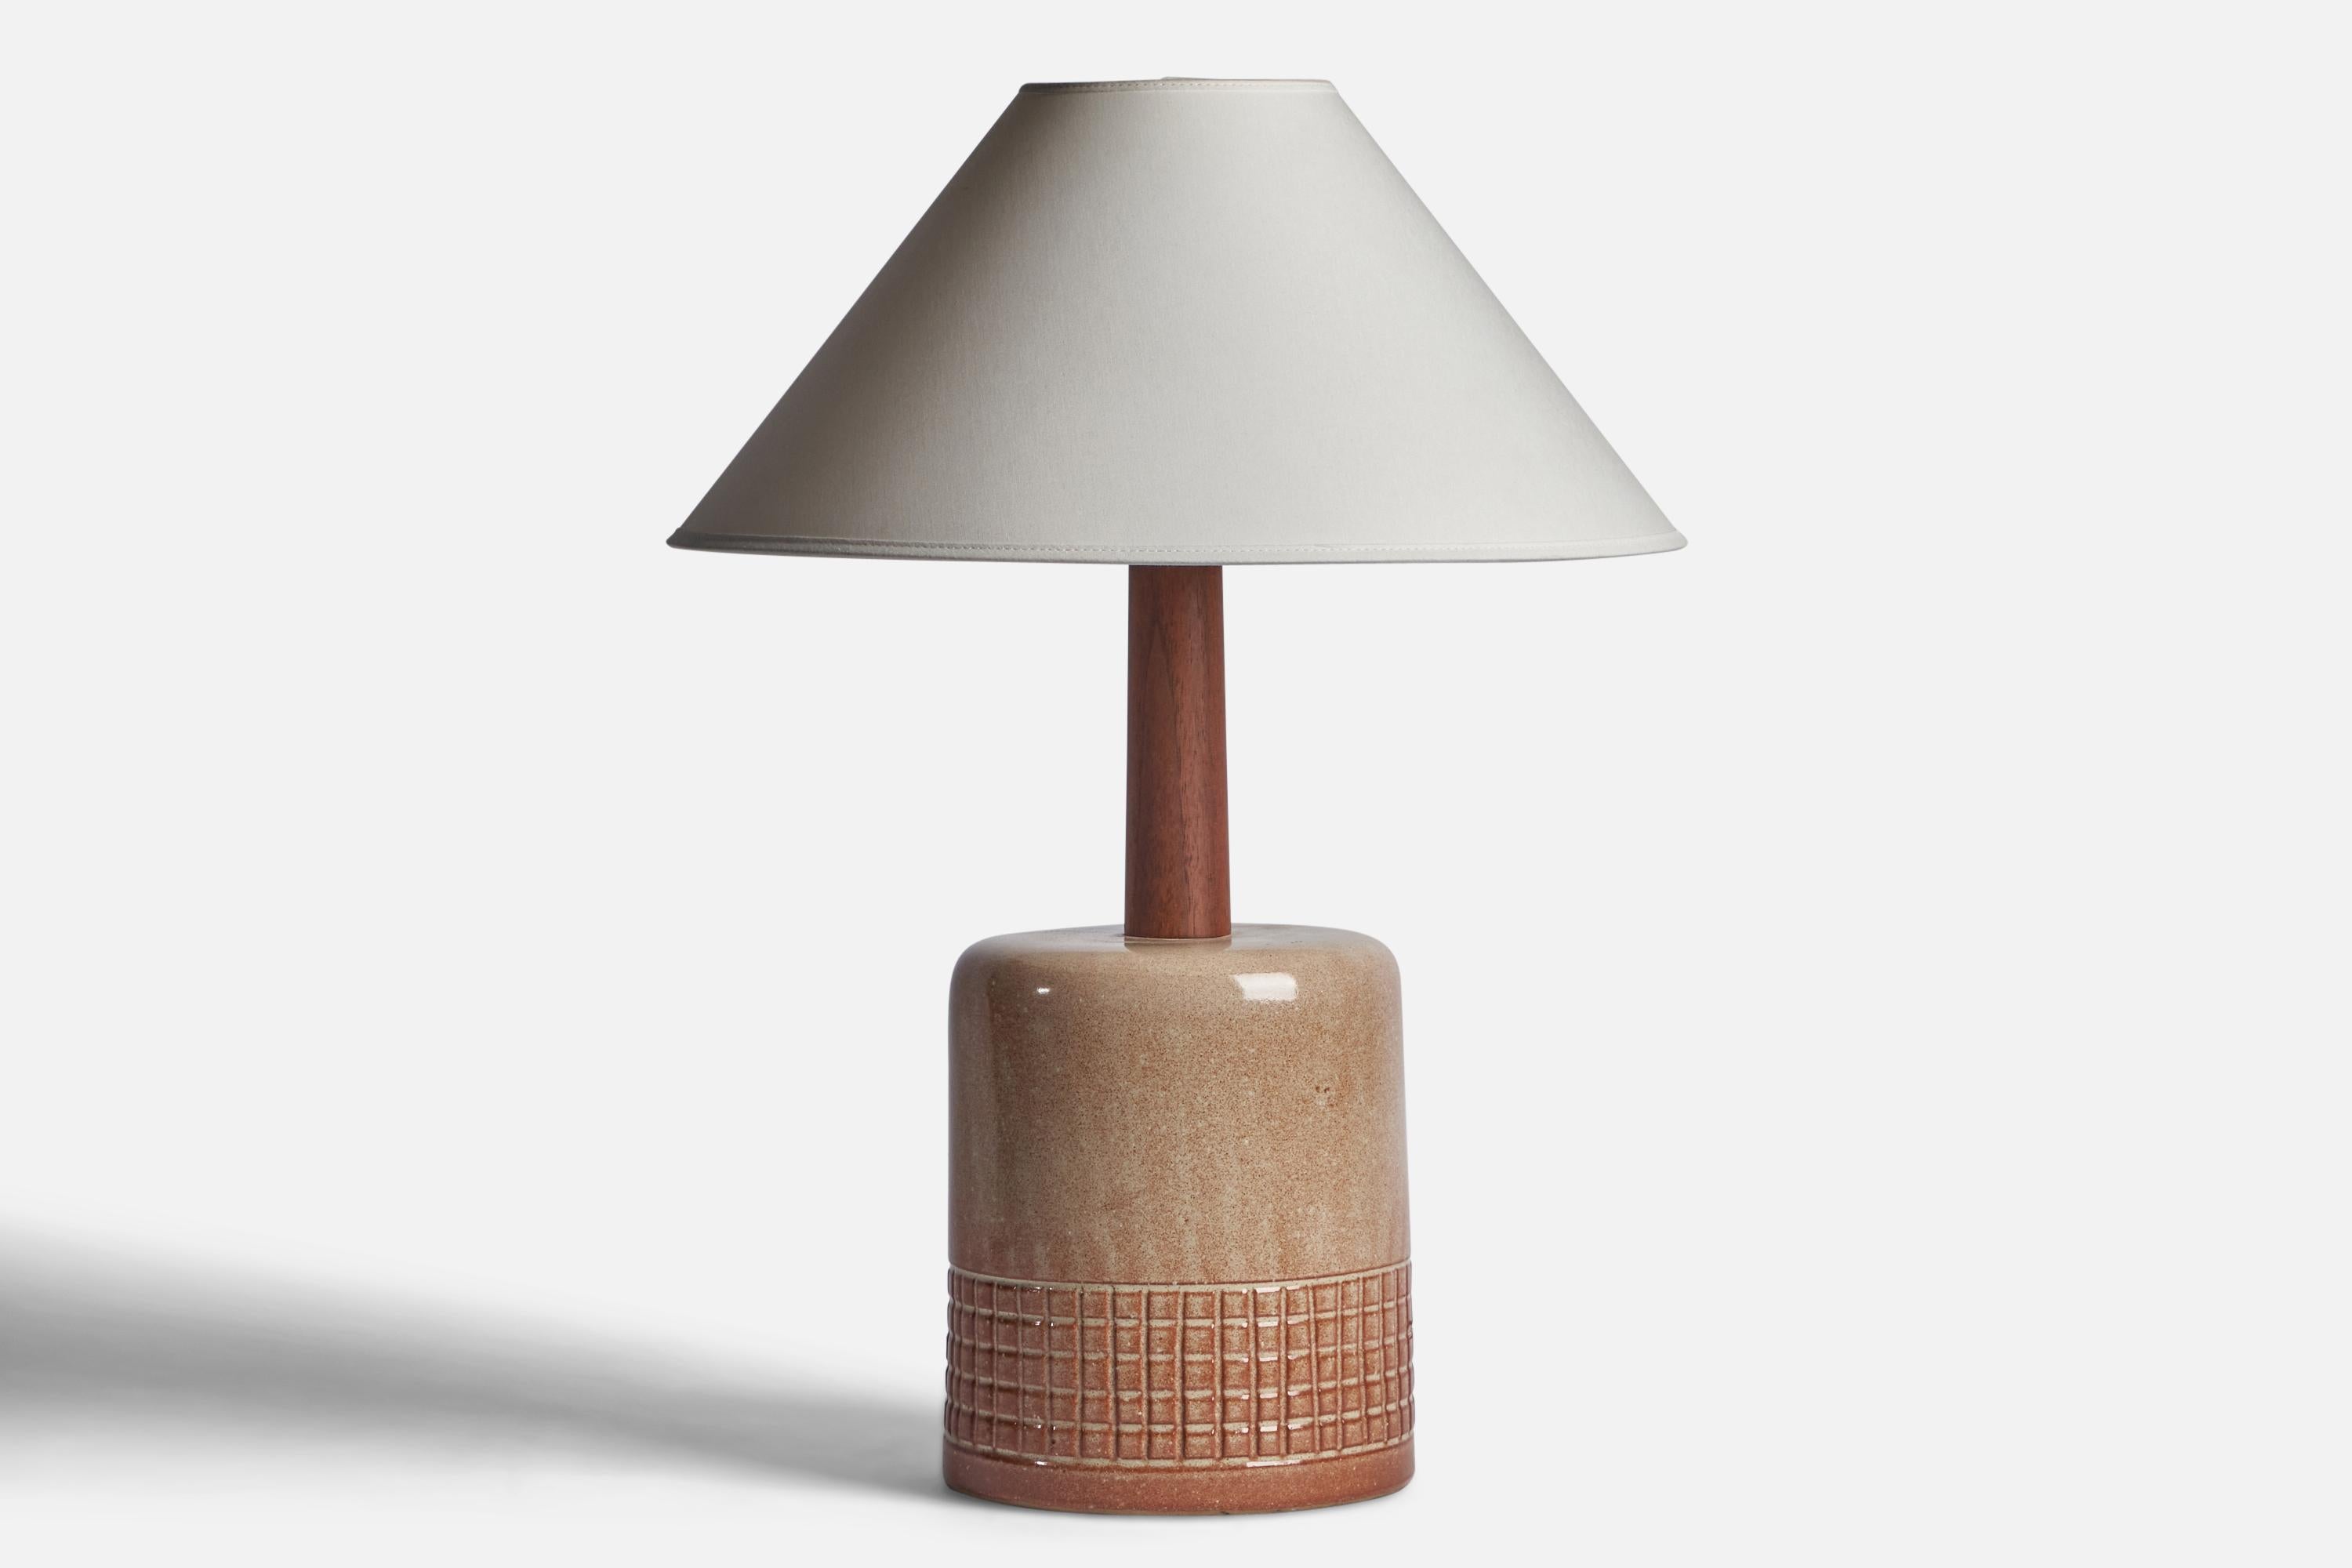 Lampe de table en céramique émaillée beige et en noyer, conçue par Jane & Gordon Martz et produite par Marshall Studios, États-Unis, années 1960.

Dimensions de la lampe (pouces) : 17.5